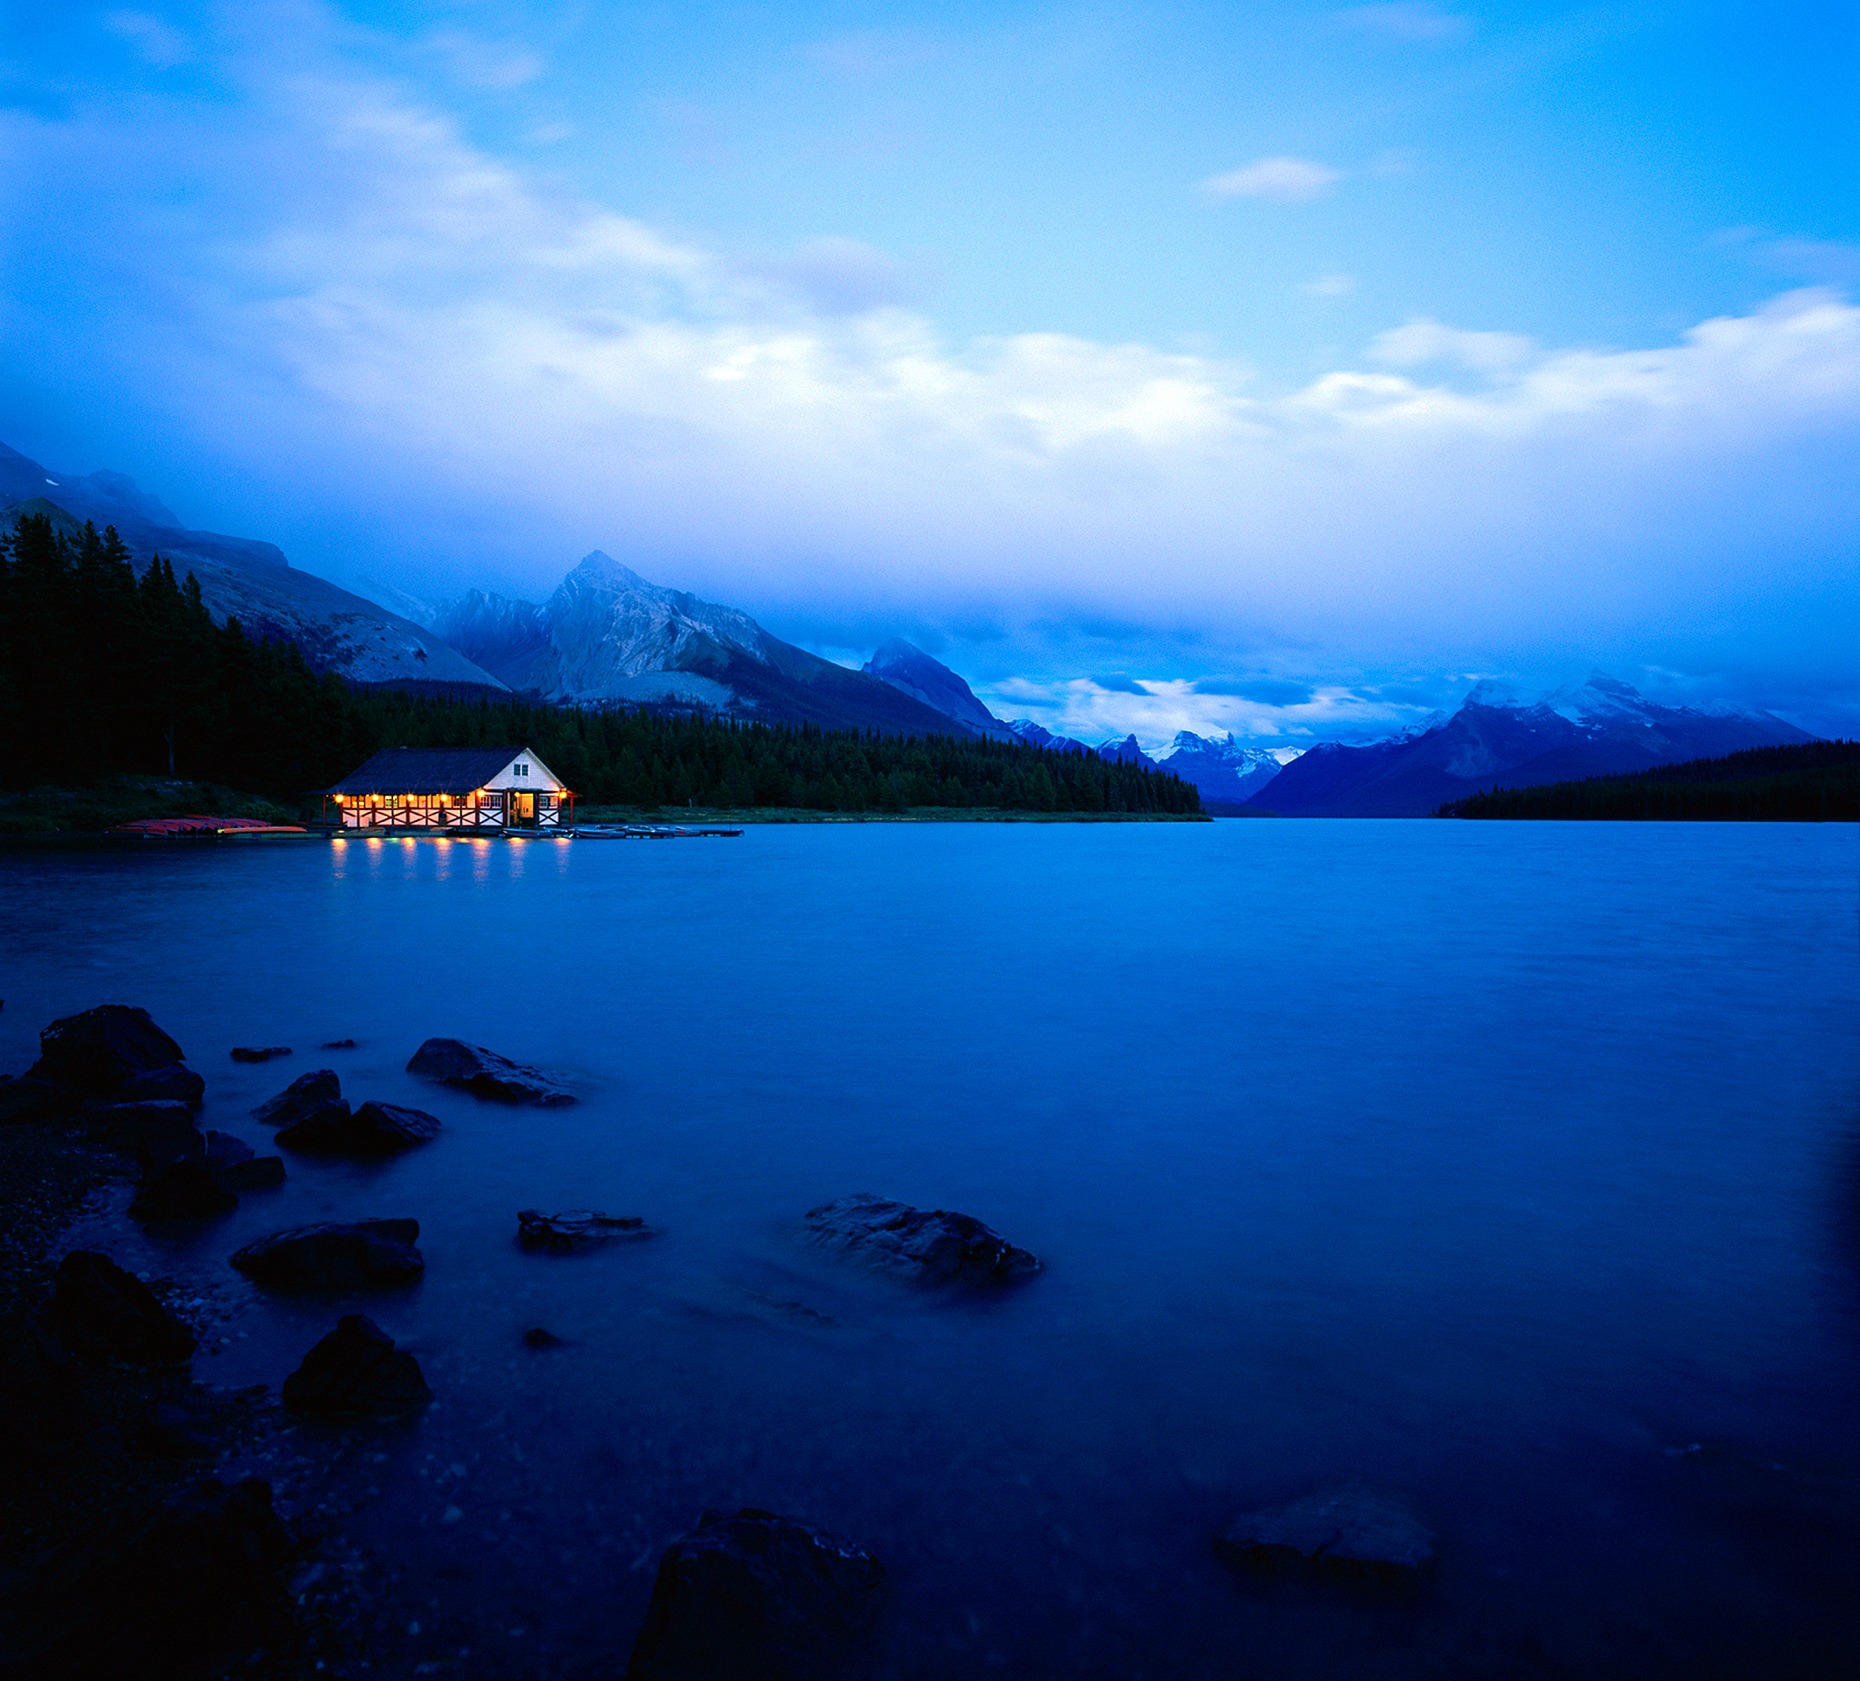 Boathouse illuminated at dusk, Maligne Lake, Jasper National Park, Alberta, Canada